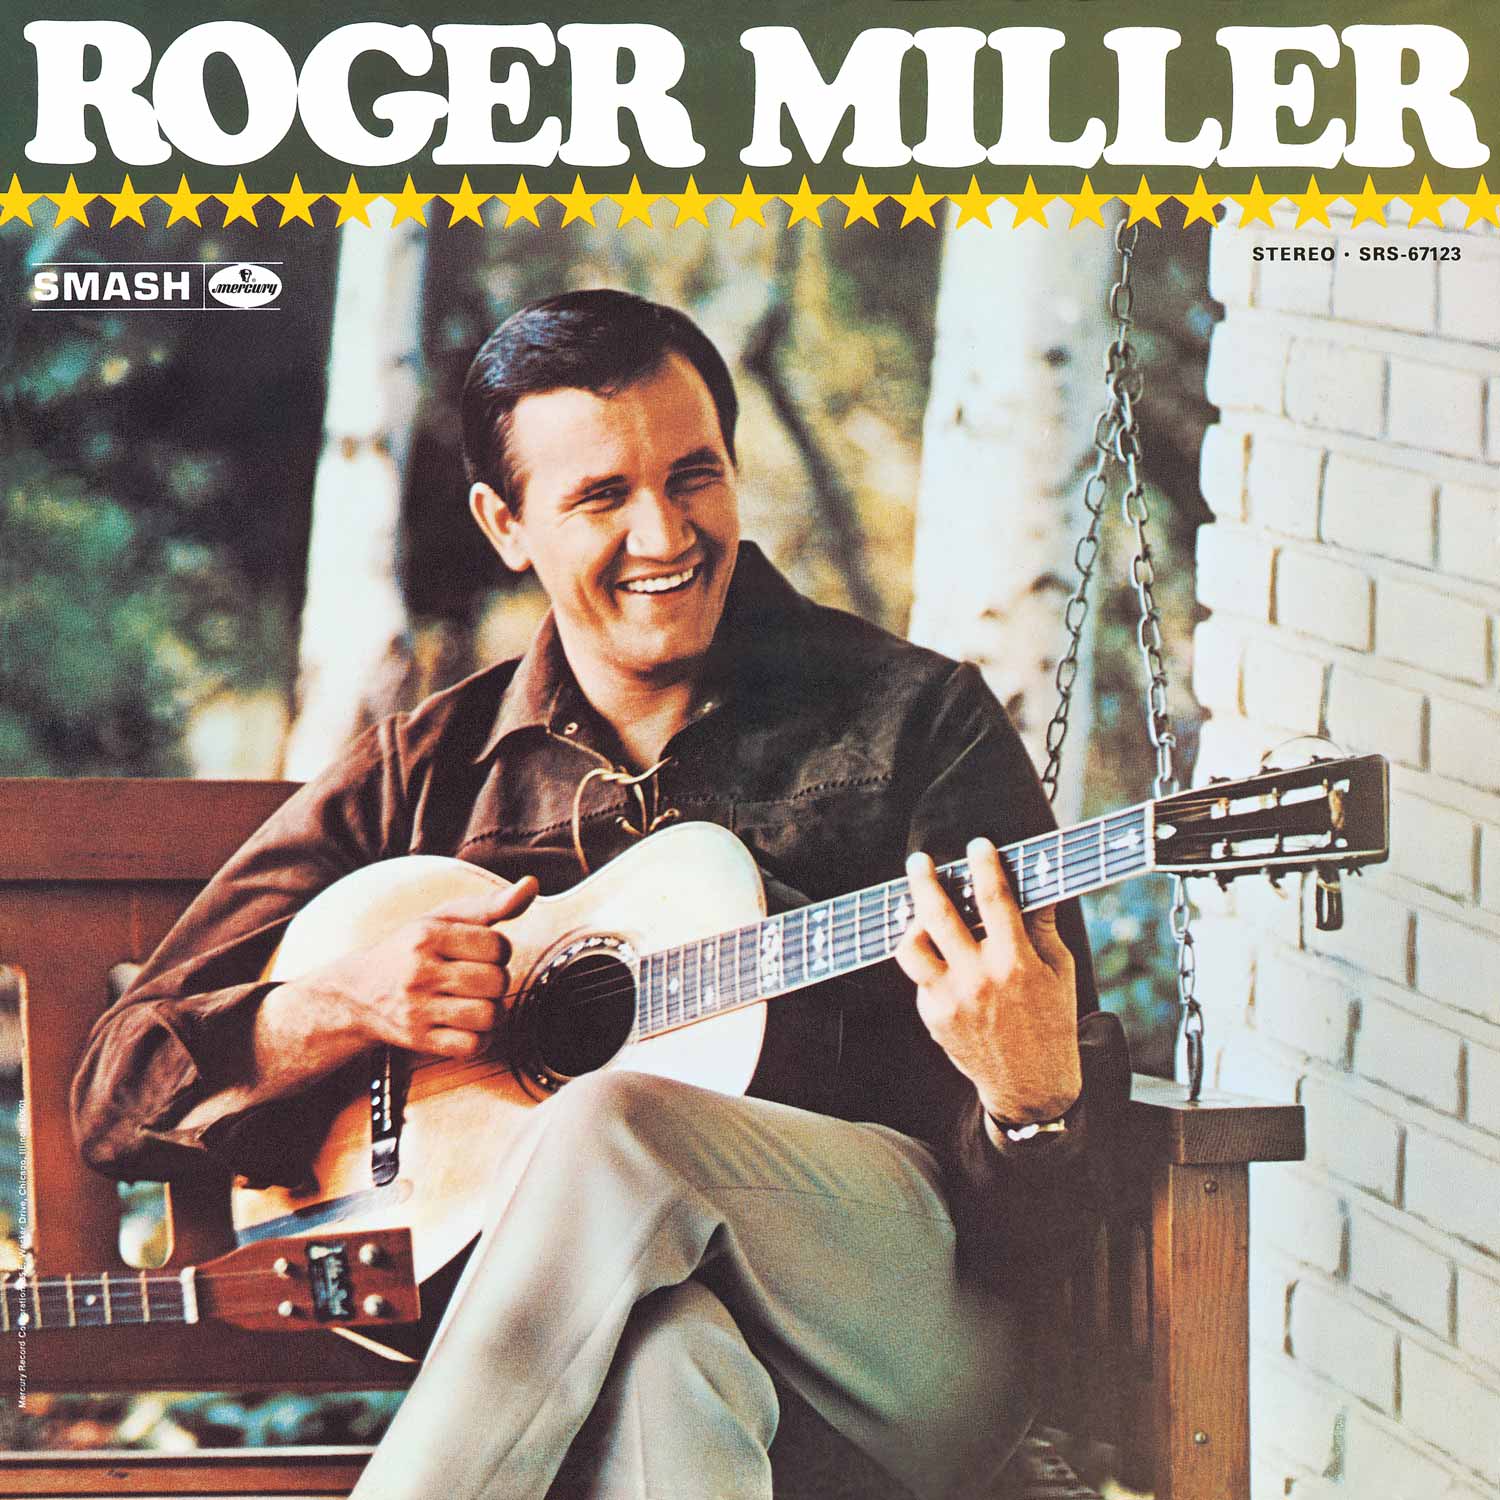 Roger Miller album cover